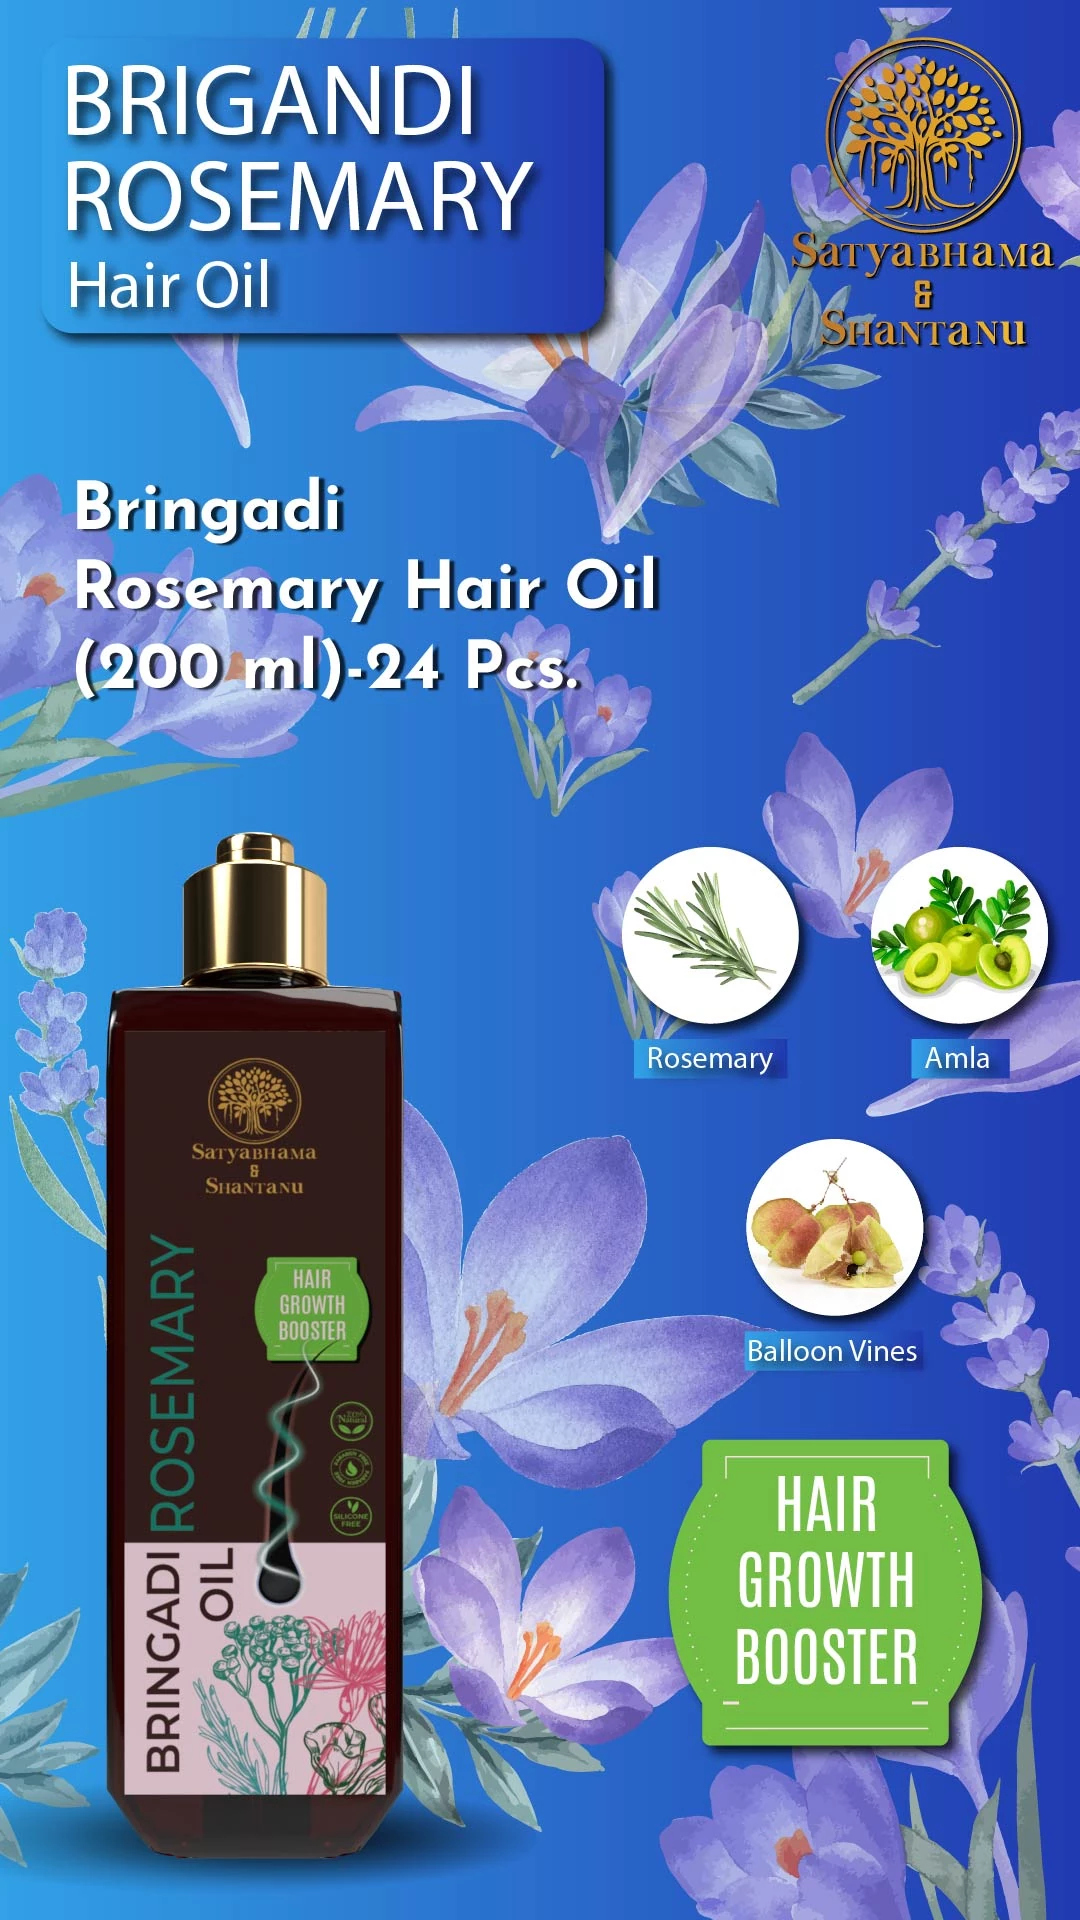 RBV B2B Bringadi Rosemary Hair Oil (200 ml)-24 Pcs.